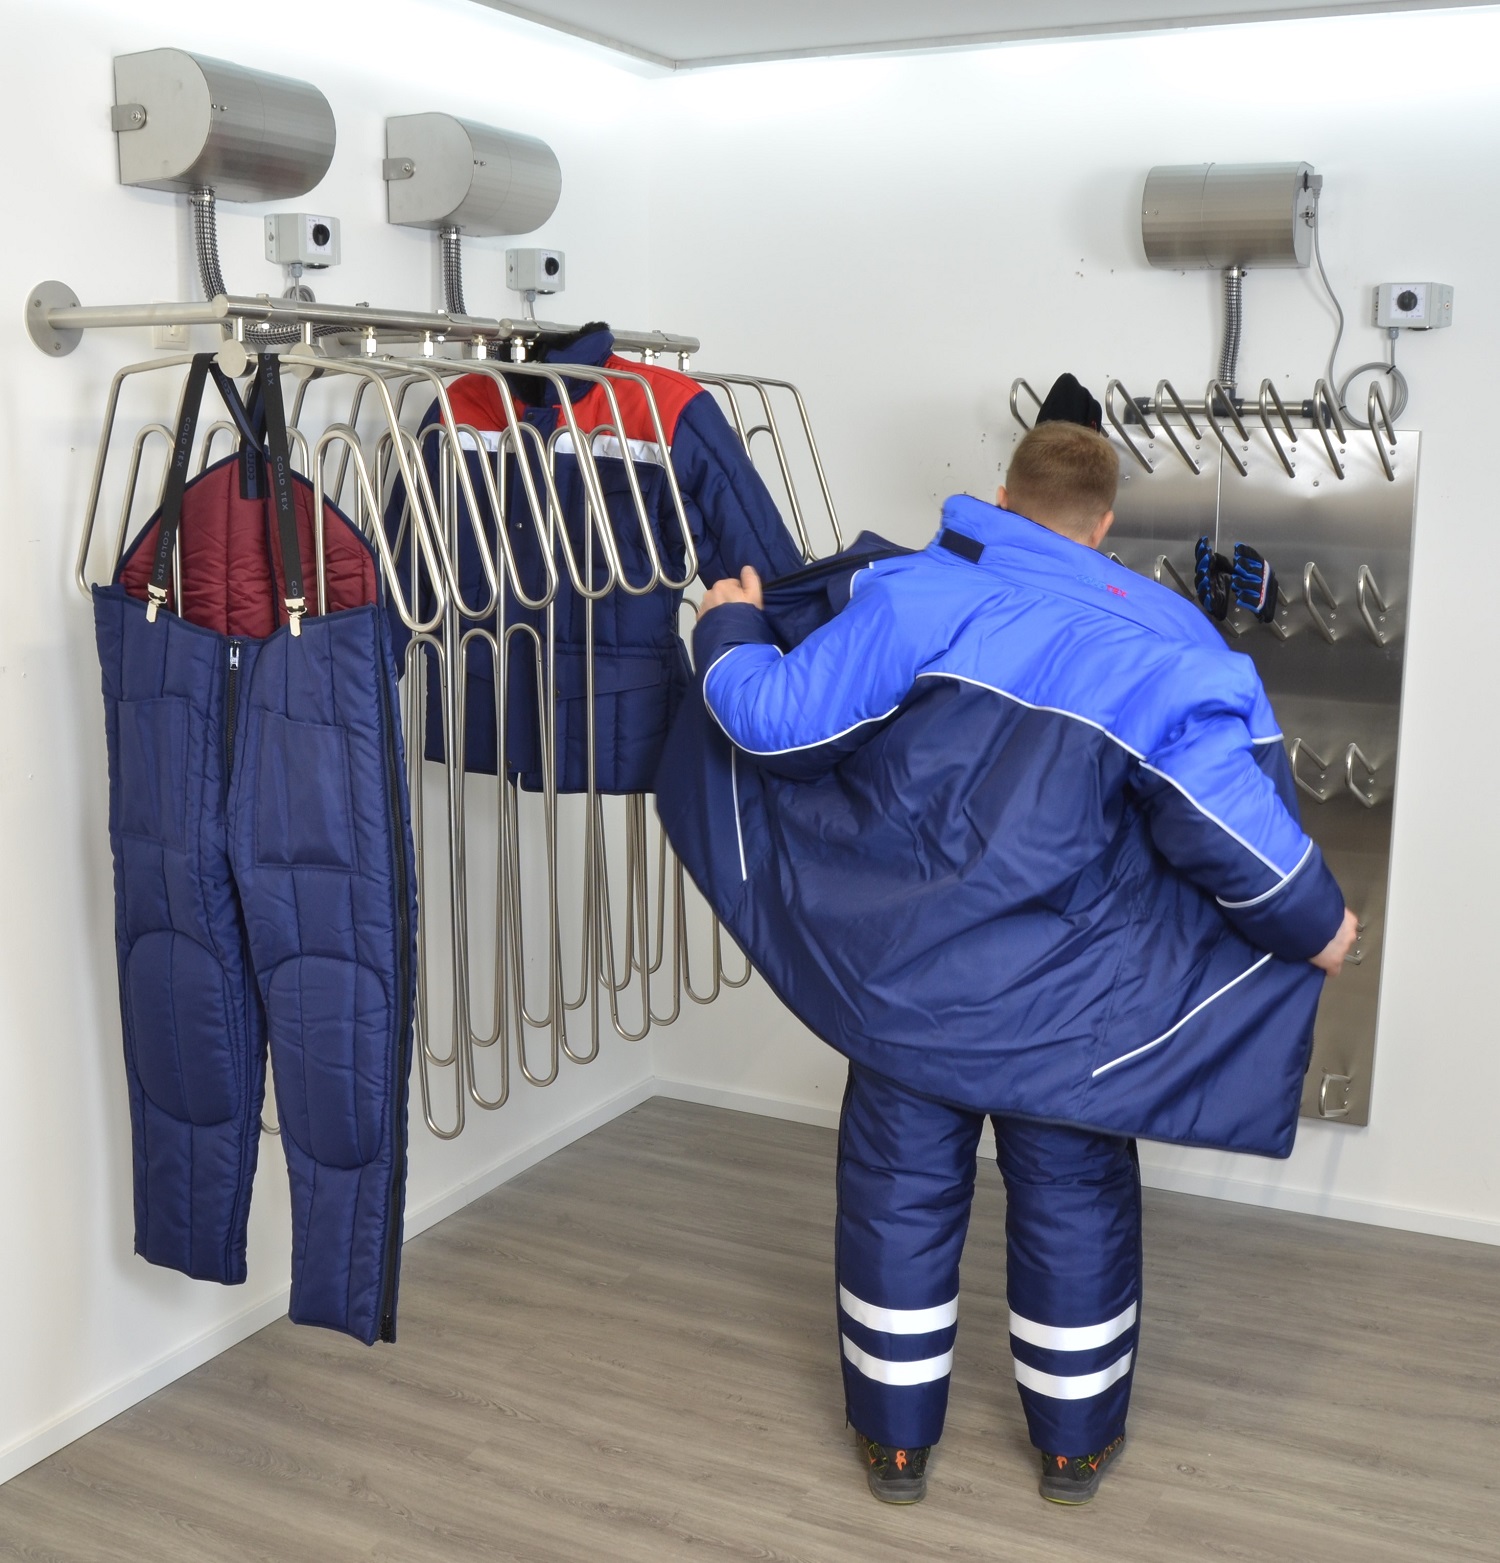 Presentan innovadores sistemas de secado para botas y trajes de trabajo